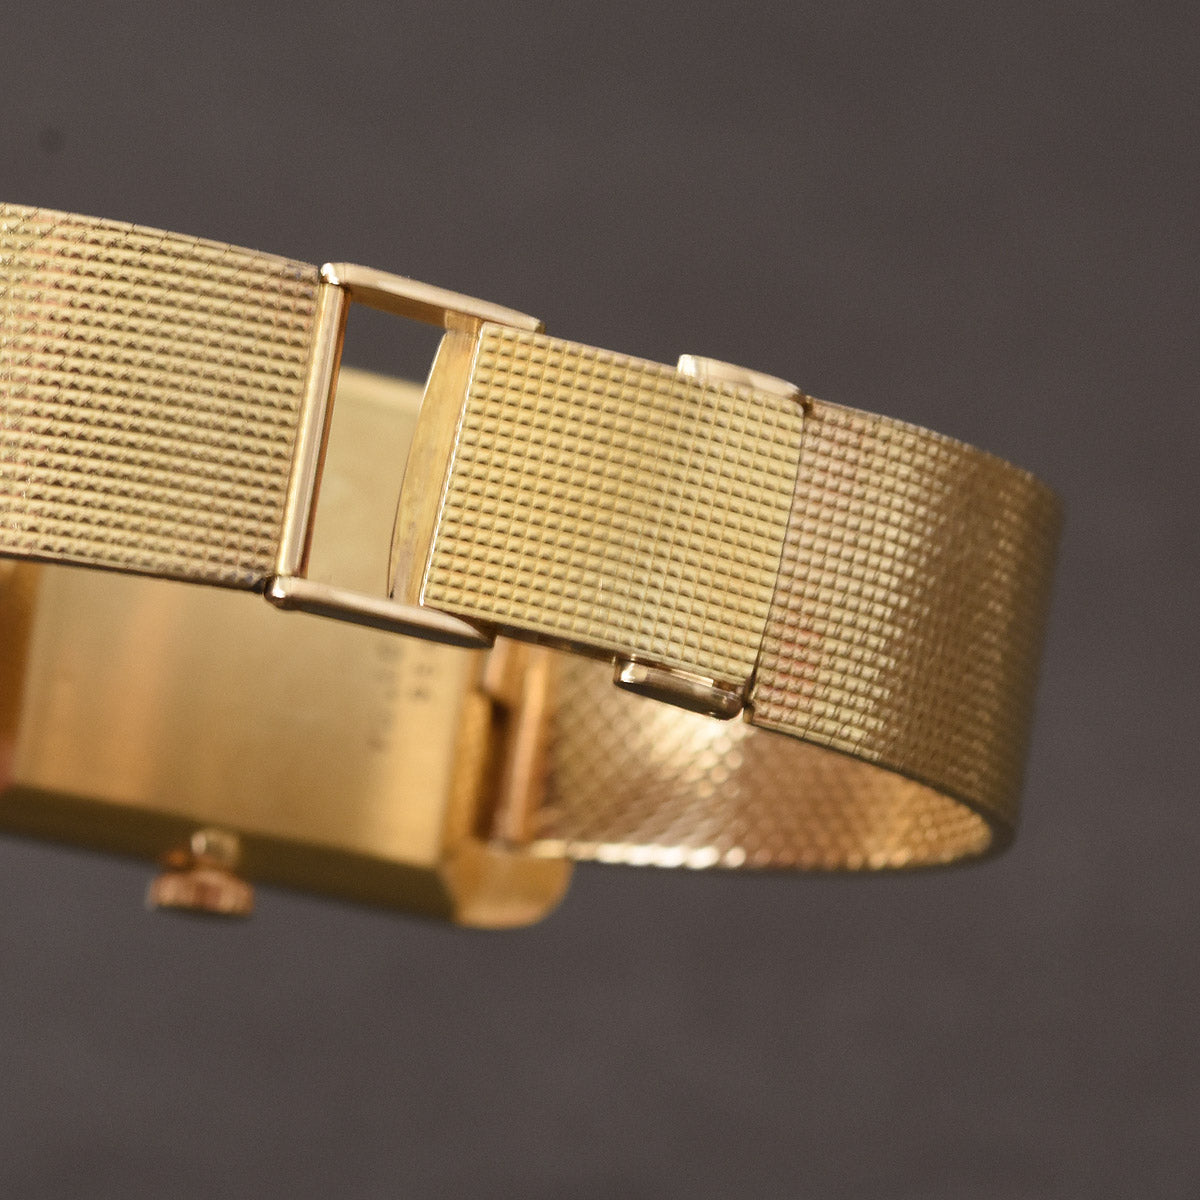 60s BUECHE GIROD Gents 18K Gold Bracelet Watch